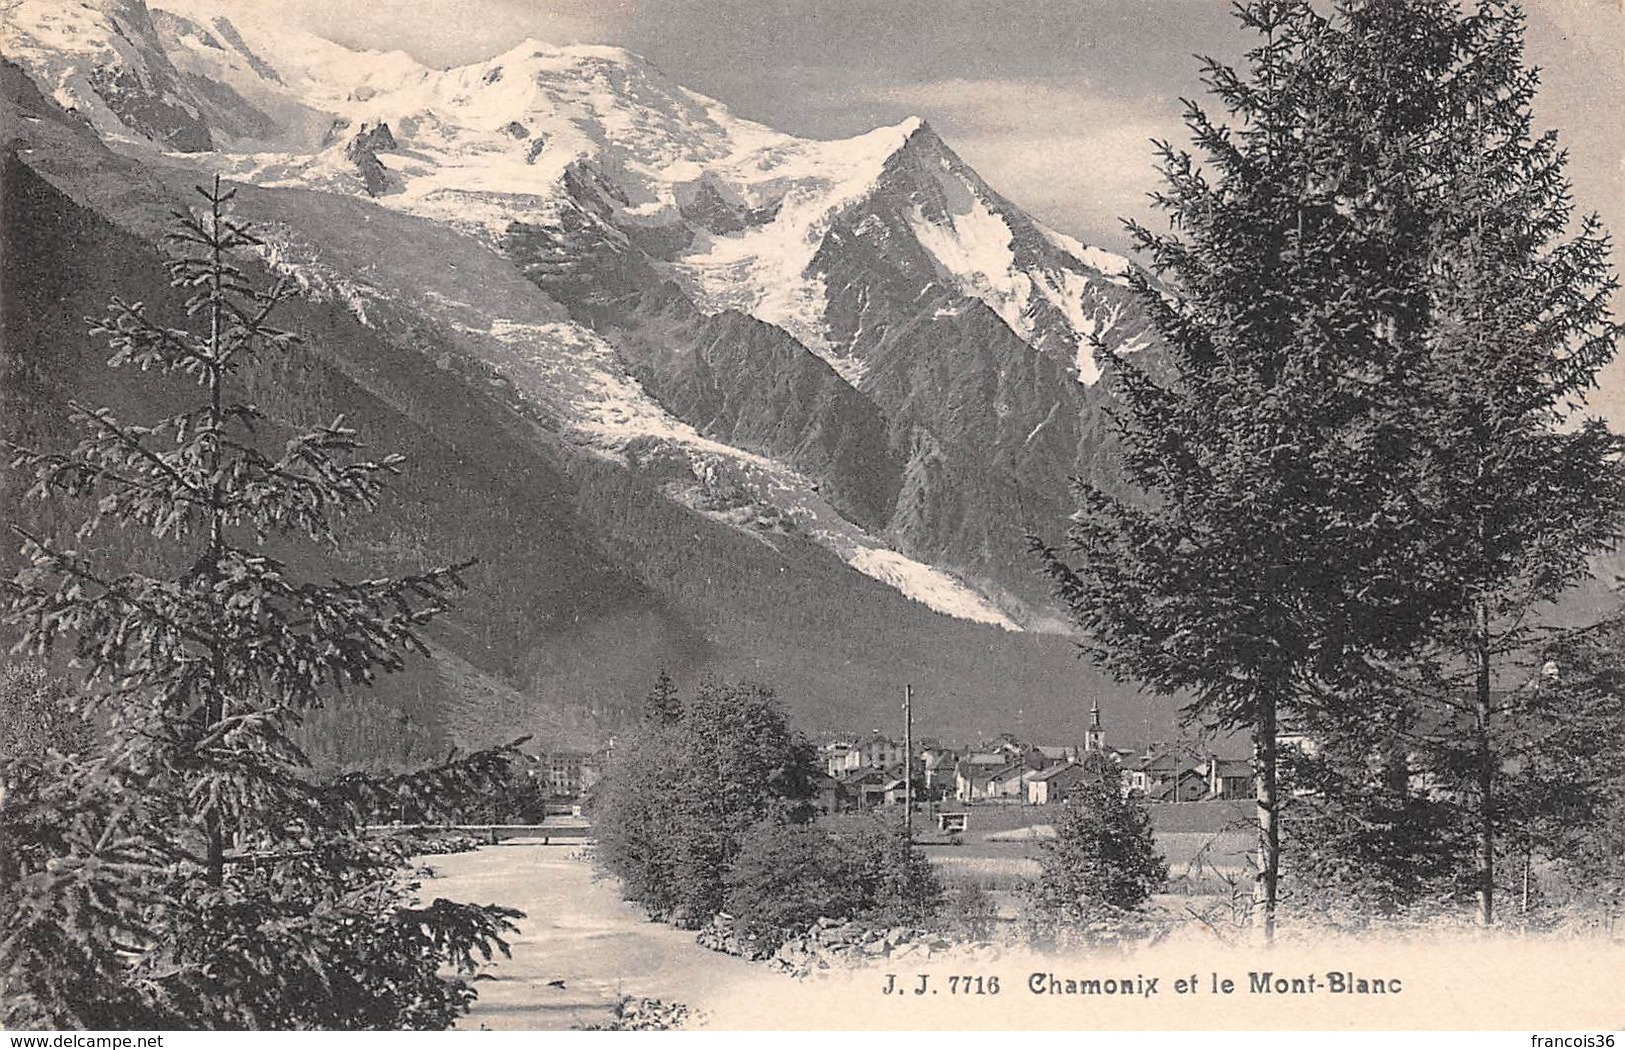 Lot de 350 cartes CPA de Chamonix - Mont Blanc - Alpinisme (74) - Très bon état général